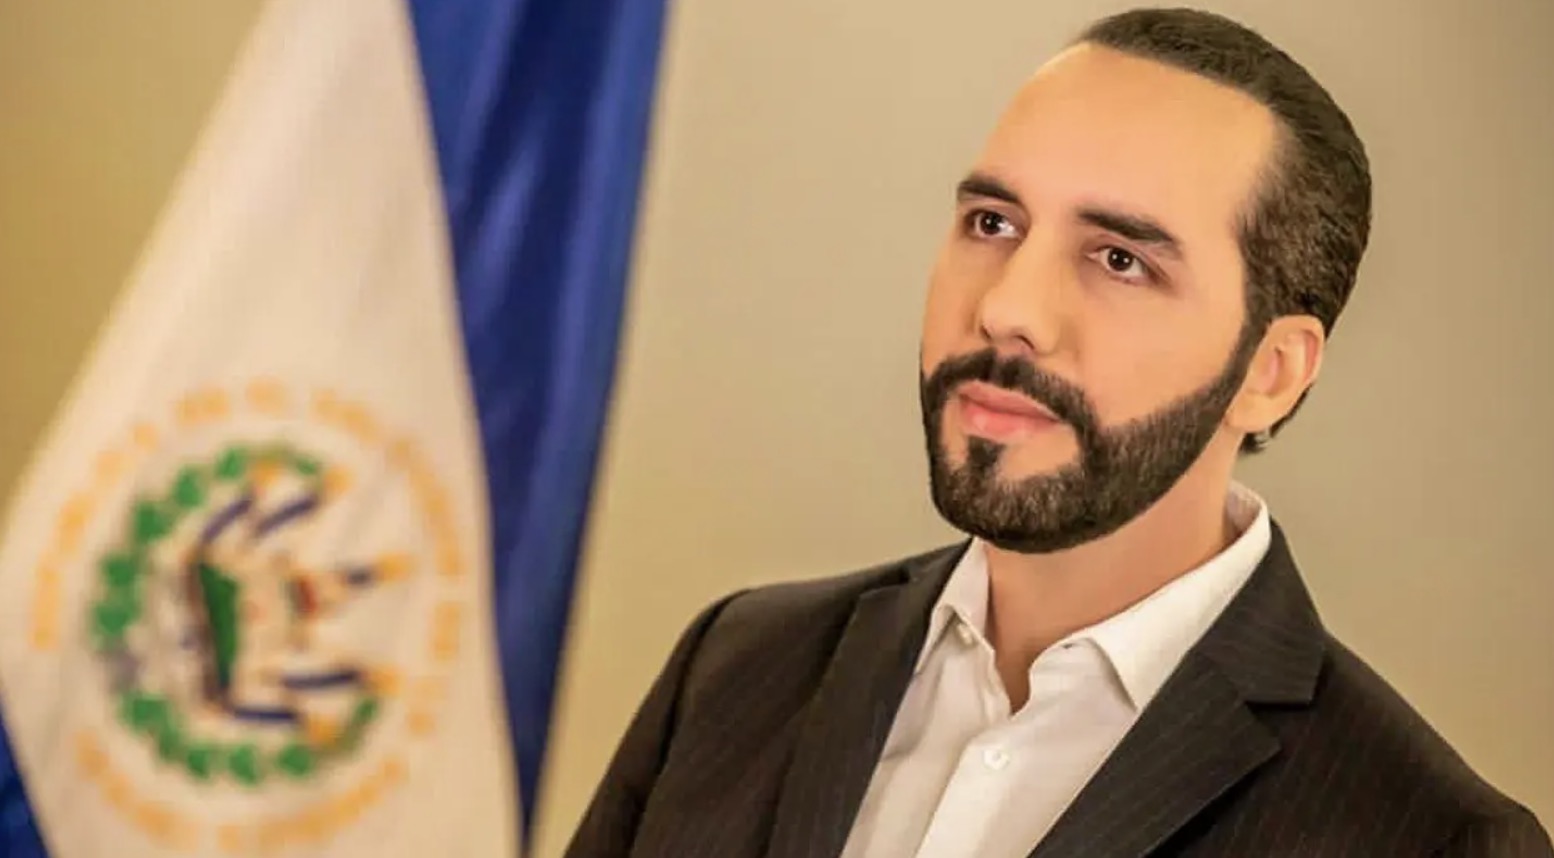 El Salvador tăng cường cam kết về Bitcoin sau cuộc bầu cử lại ở Bukele